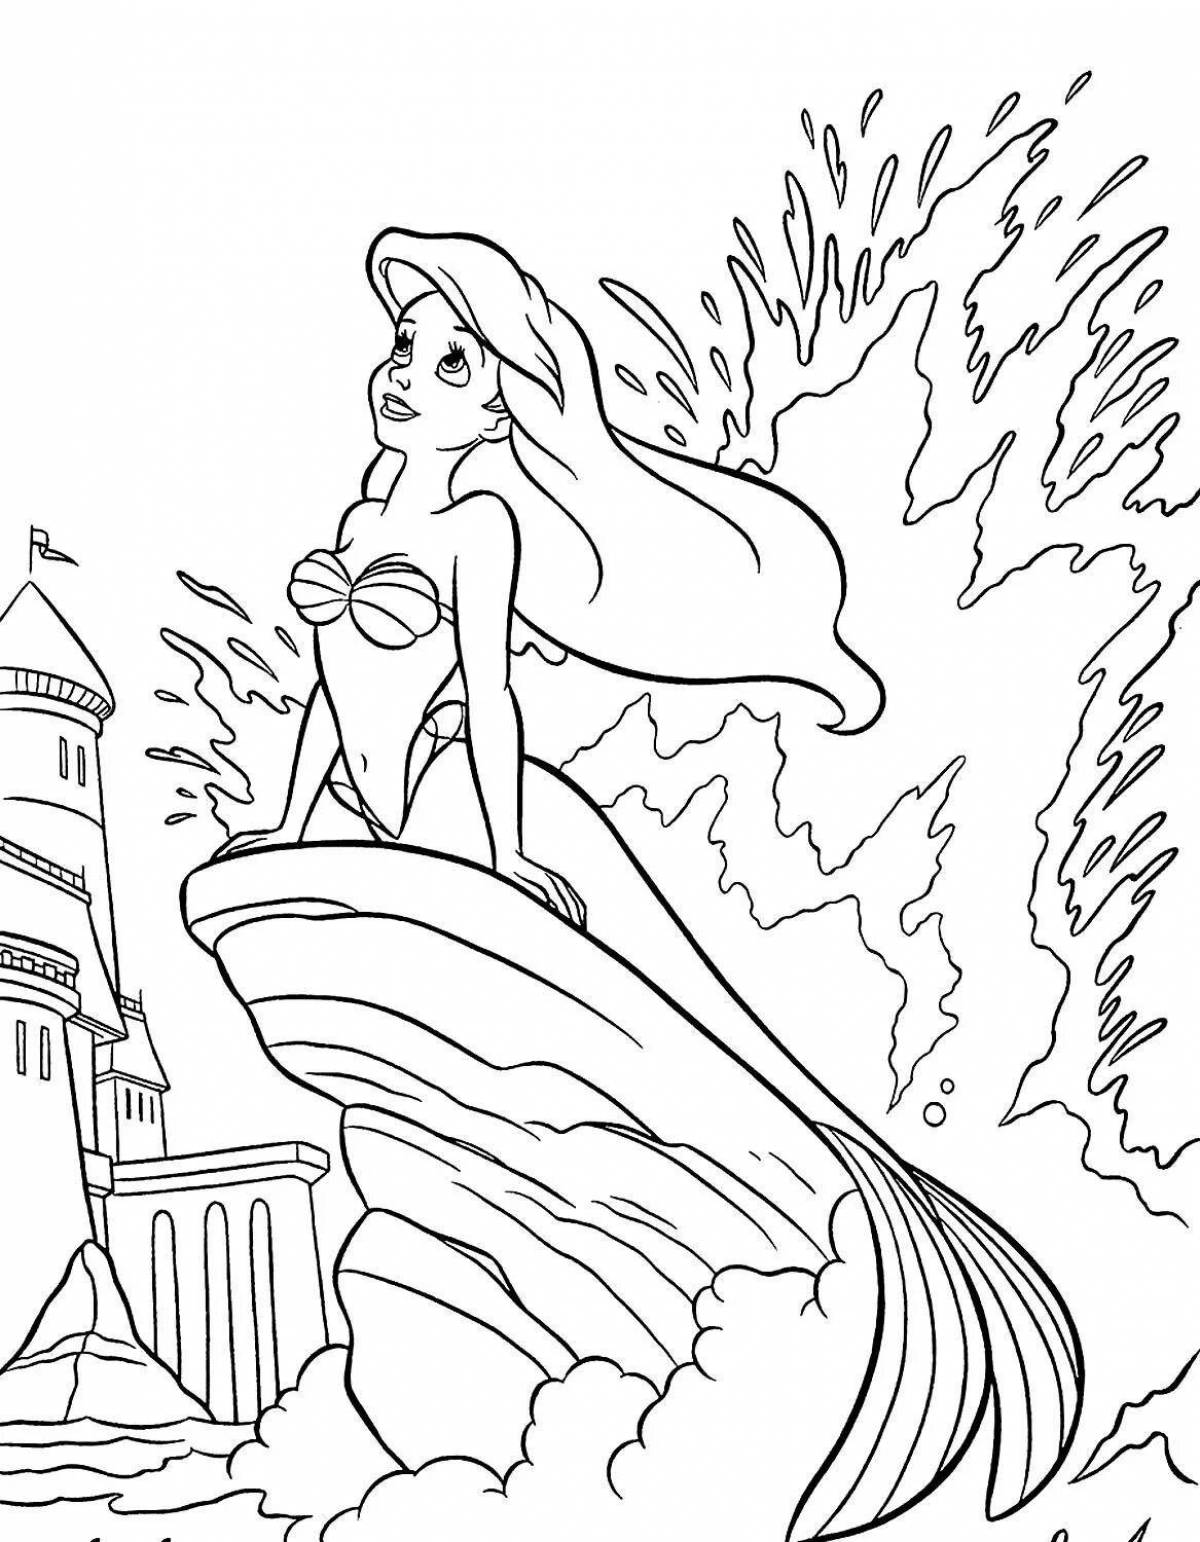 Shiny Mermaid Princess Coloring Page